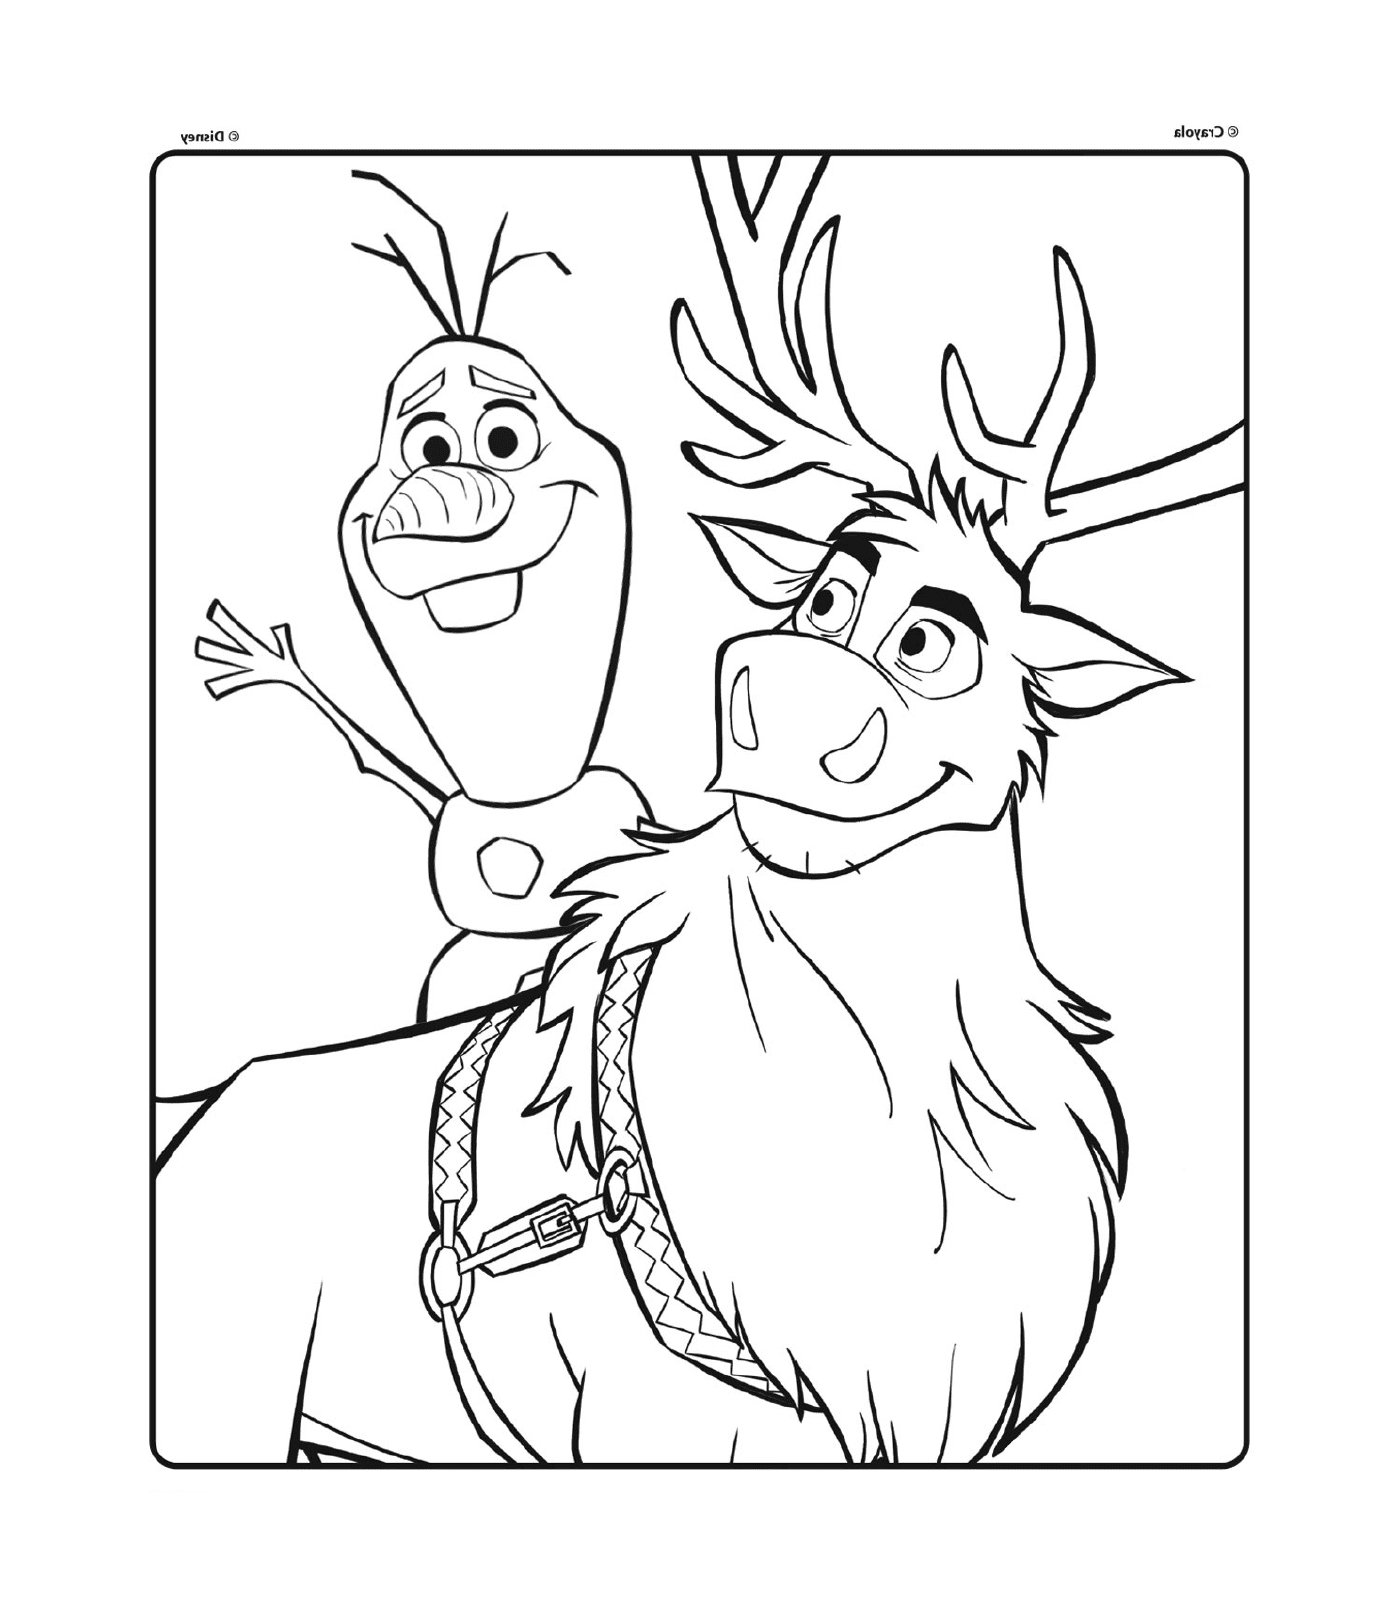  Olaf e Sven da Disney The Snow Queen 2 